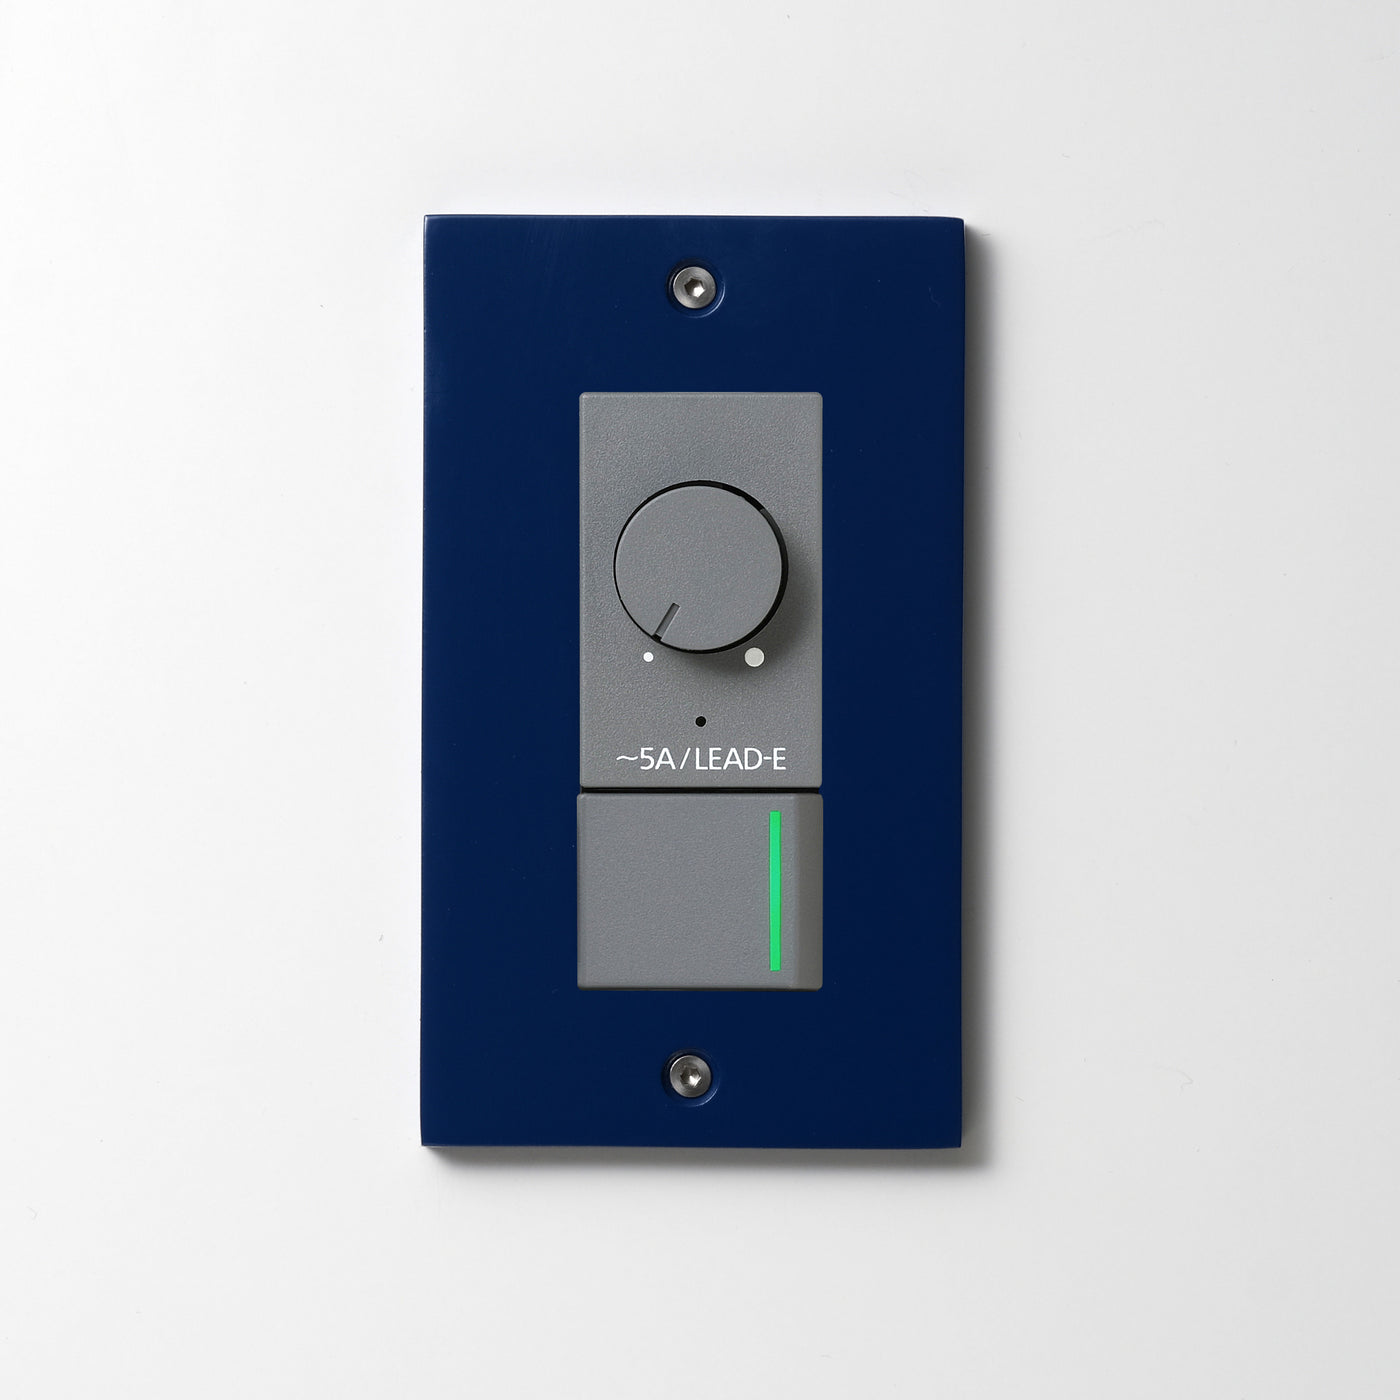 アルミダイキャスト（ブルー）プレート  <br>+ NK 正位相制御方式ライトコントロール＋片切、3路ガイドランプ（グリーン）スイッチ　 グレー